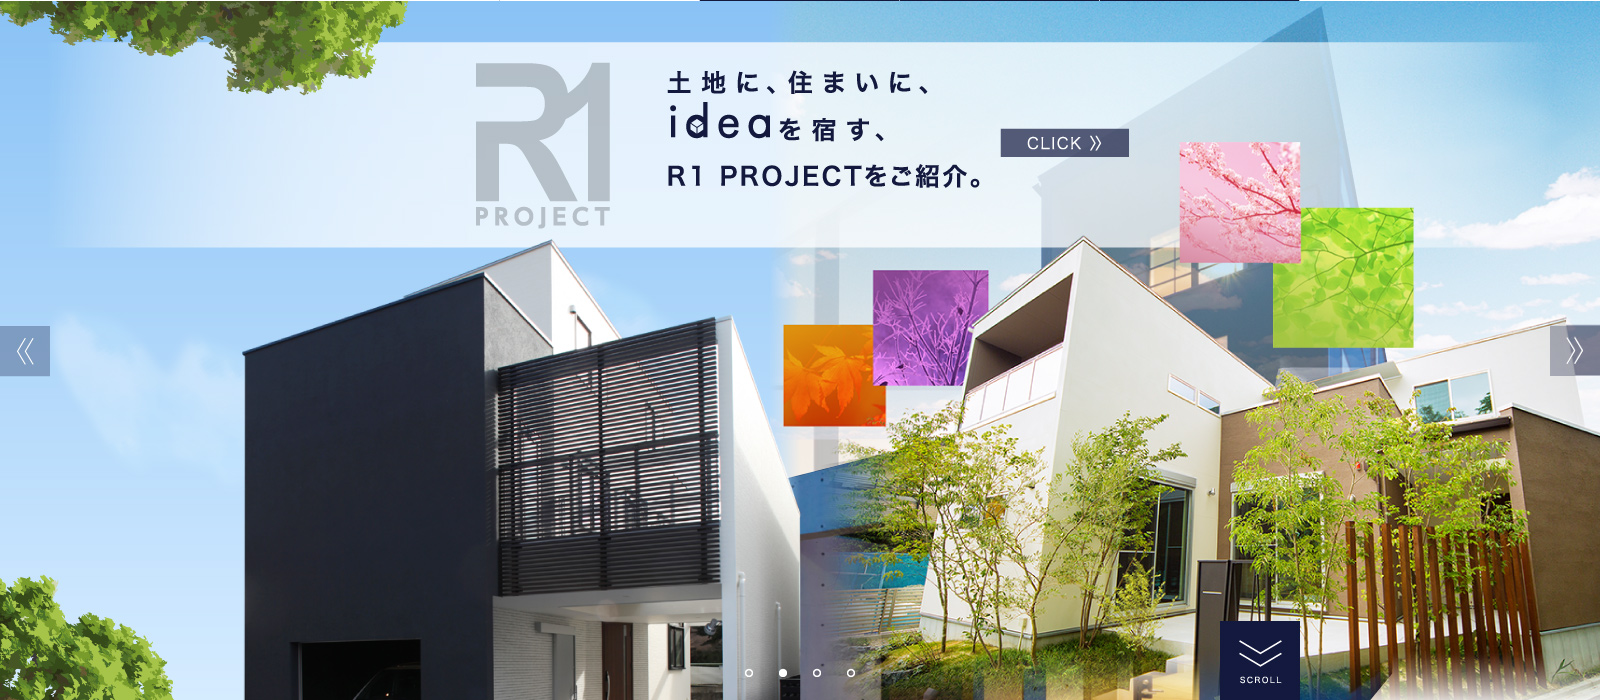 R1 PROJECT / 土地に、住まいに、ideaを宿す、R1 PROJECTをご紹介。